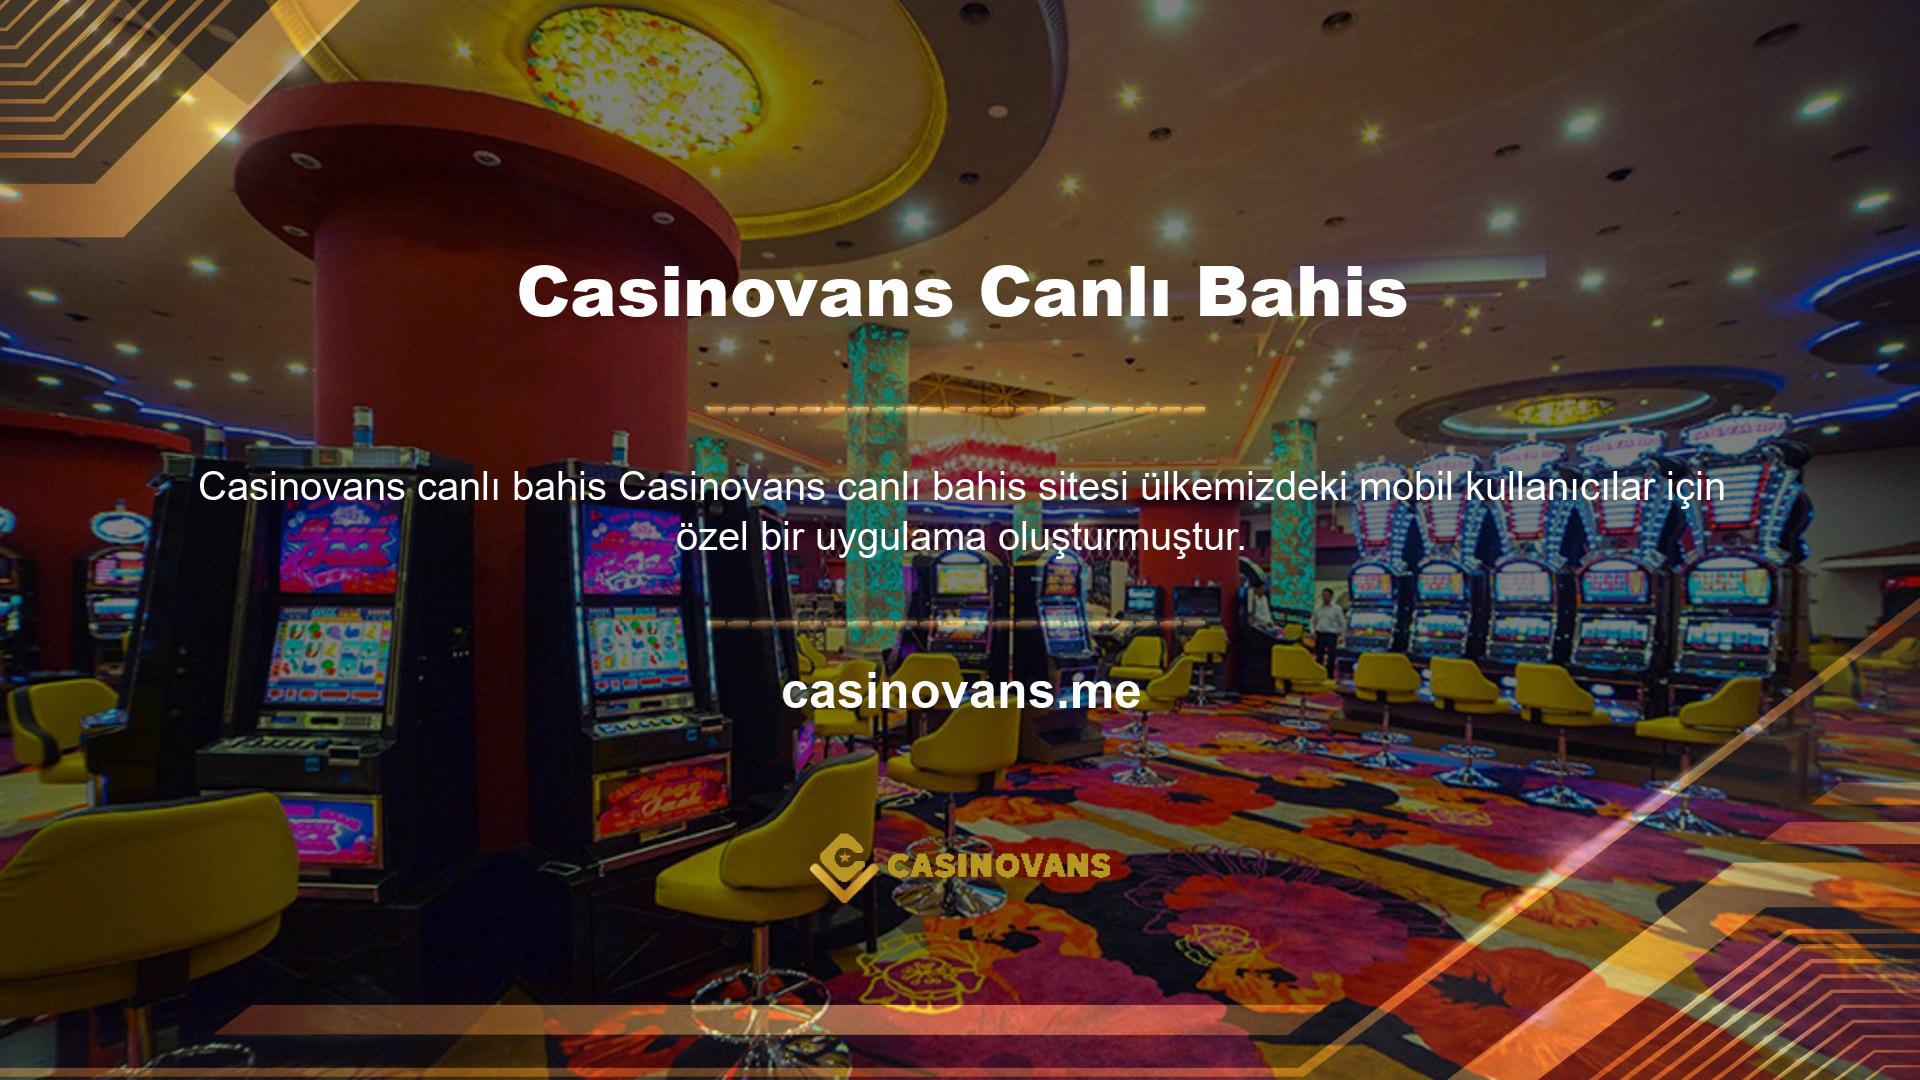 Mobil uygulama Casinovans kullanıcılarına özel olduğundan bahis sitesinden indirilebilmektedir